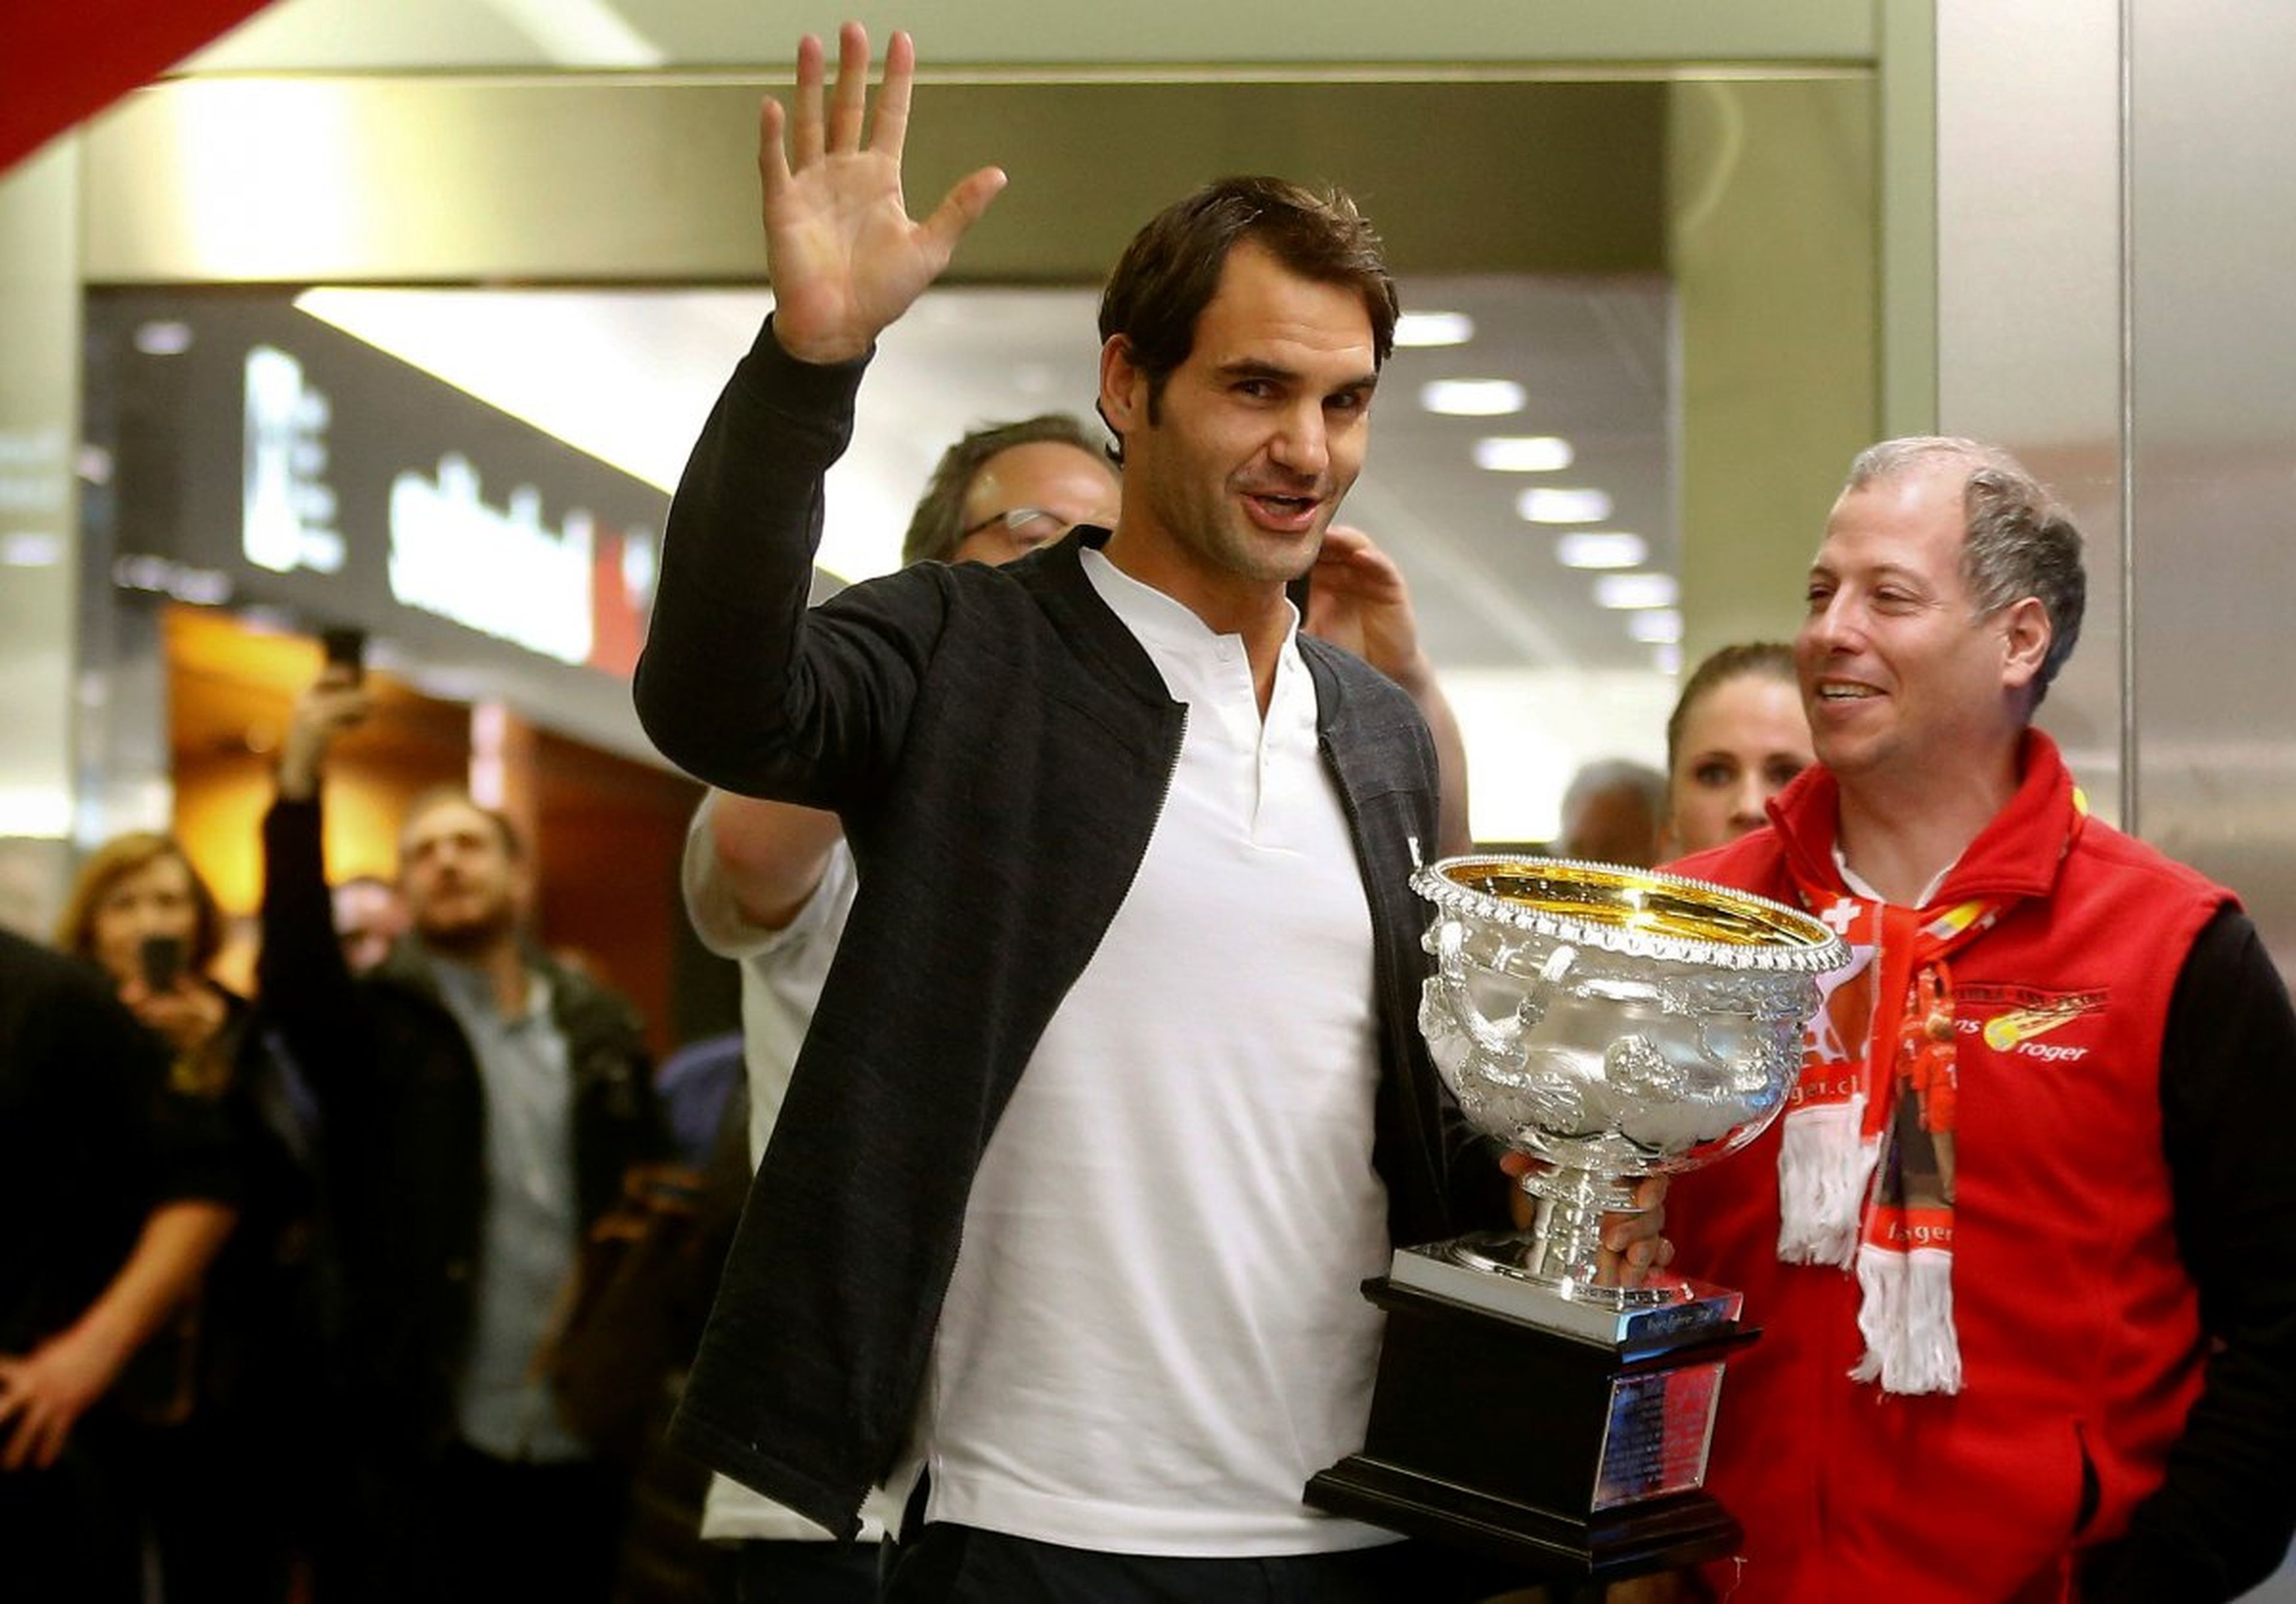 [RE] El tenista Roger Federer celebrando su victoria en el Open de Australia 2017.